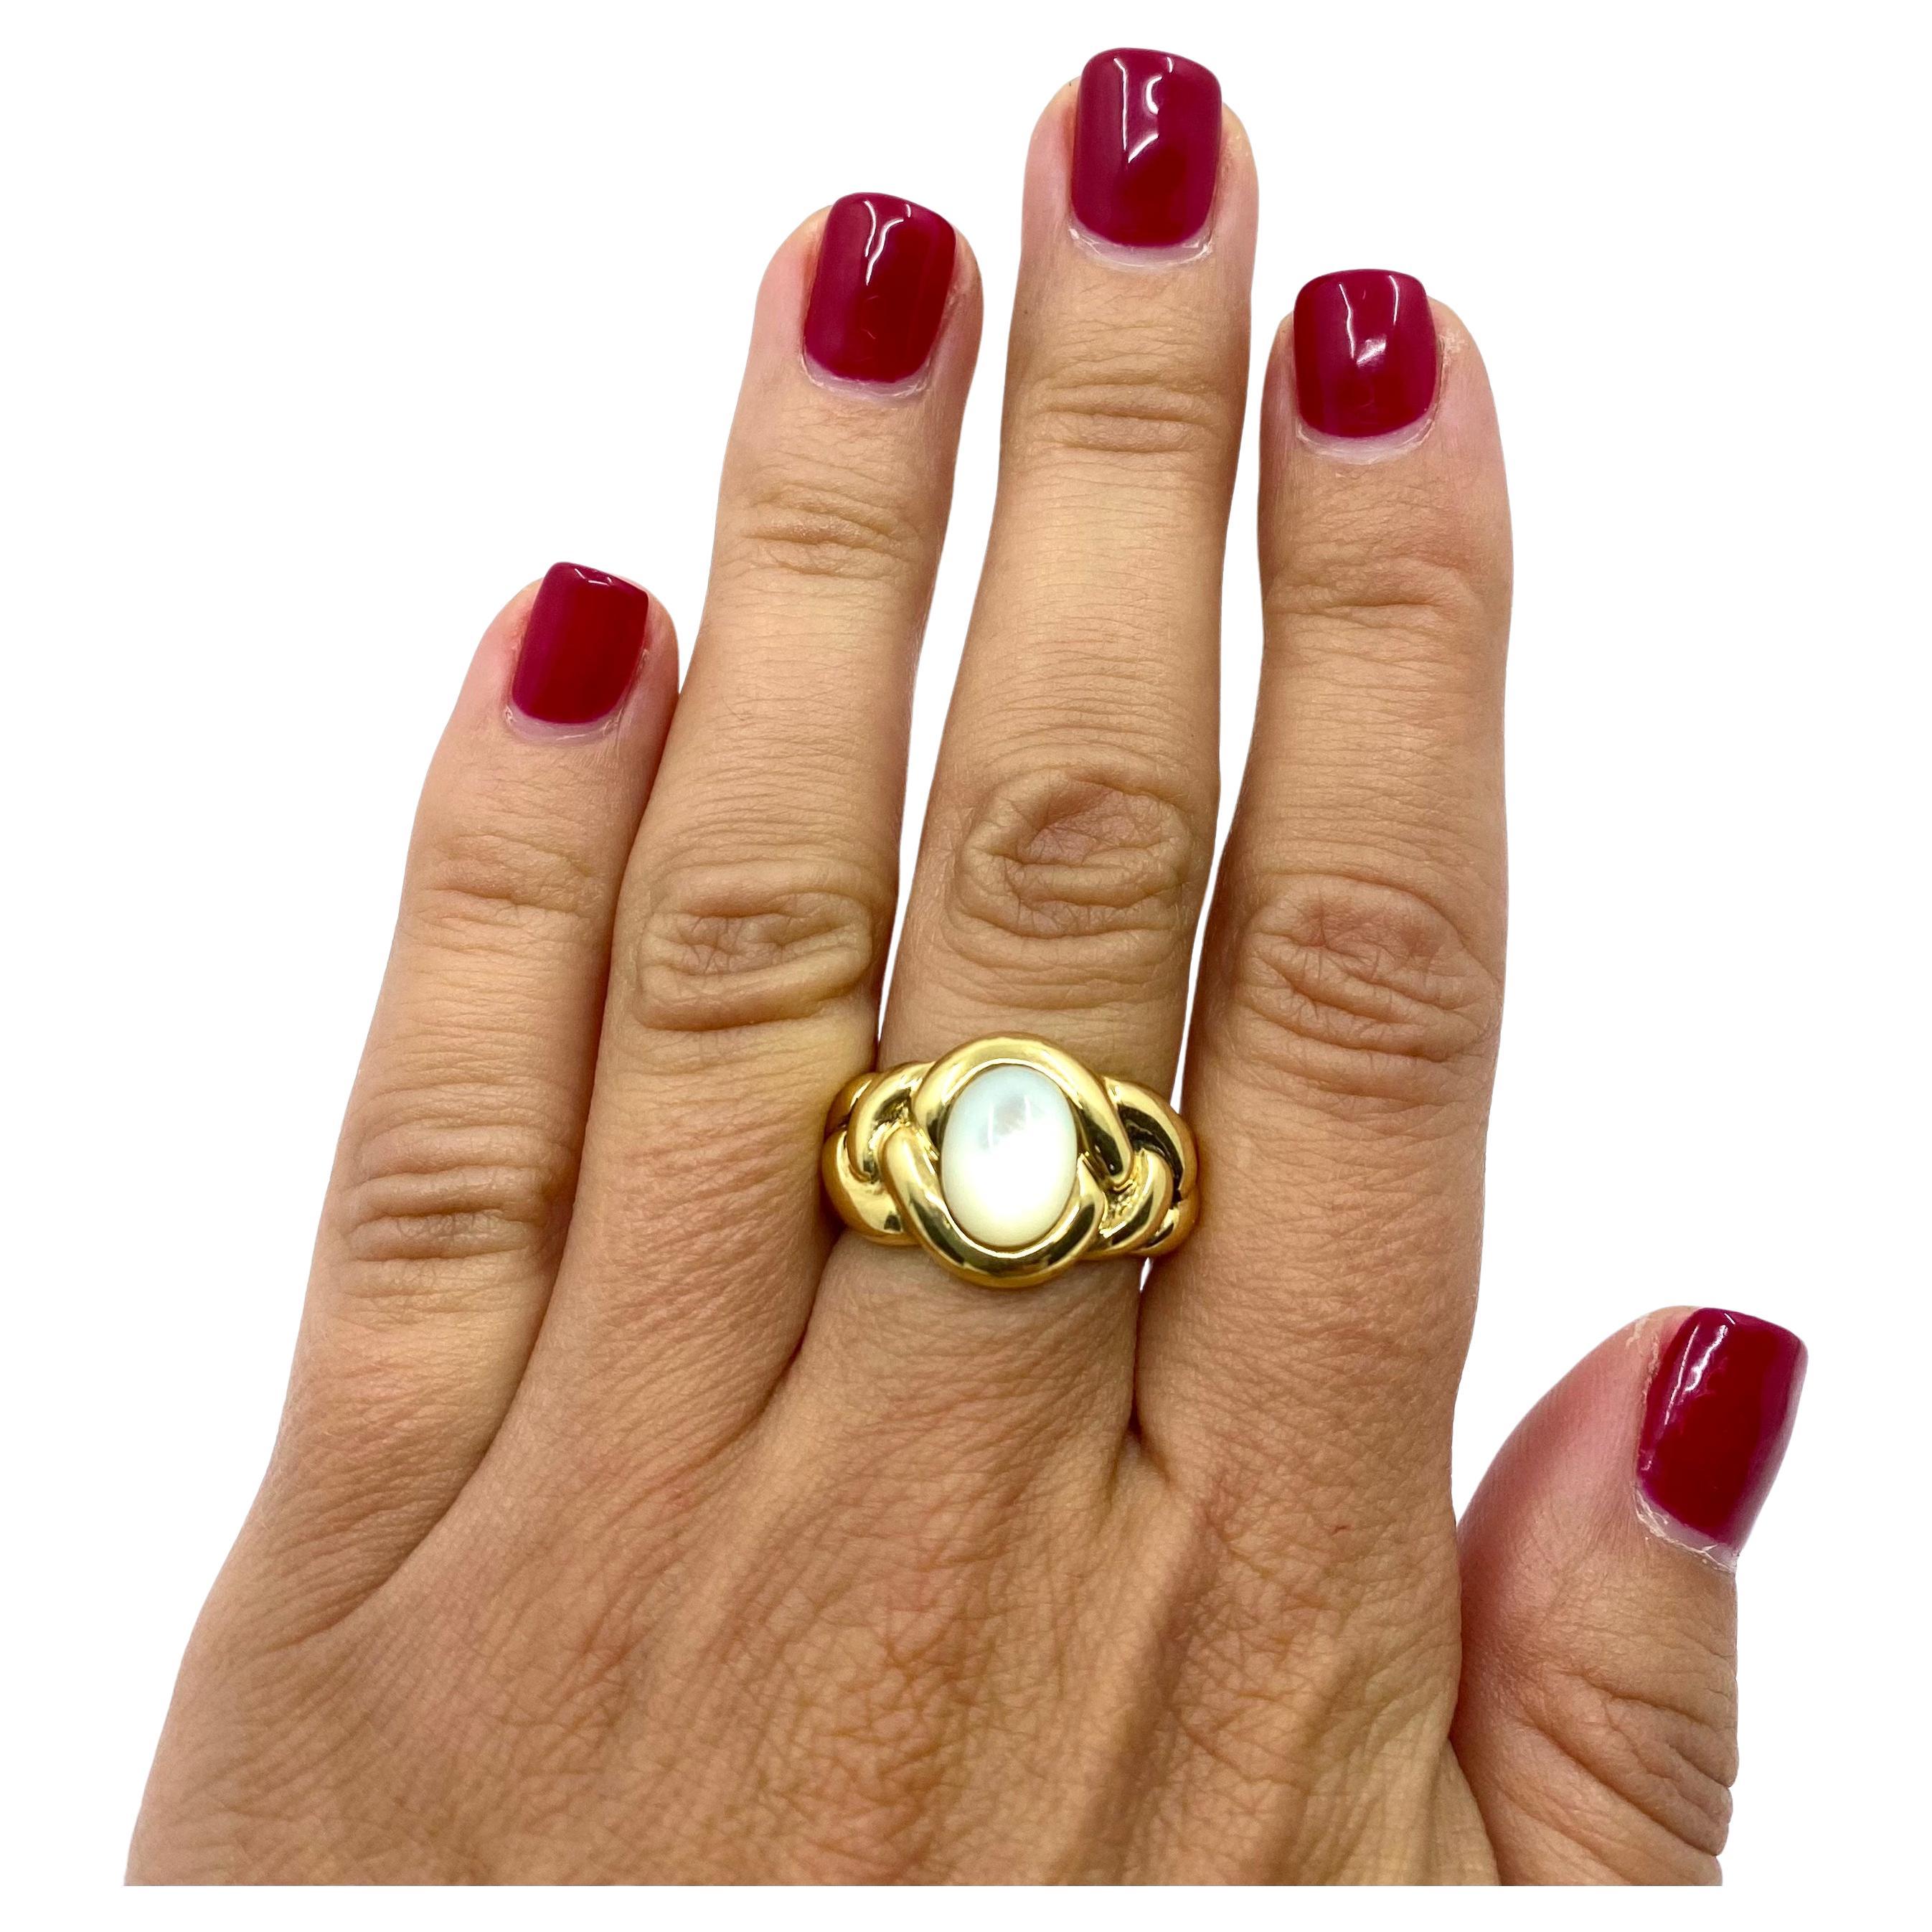 Ein schöner Vintage-Ring von Van Cleef & Arpels aus 18k Gold und Perlmutt. Der Ring ist in Form eines verstrebten Schafts gestaltet, der das ovale Perlmutt im Cabochon-Schliff einrahmt. Das Design dieses VCA-Rings ist sinnlich und feminin. Die